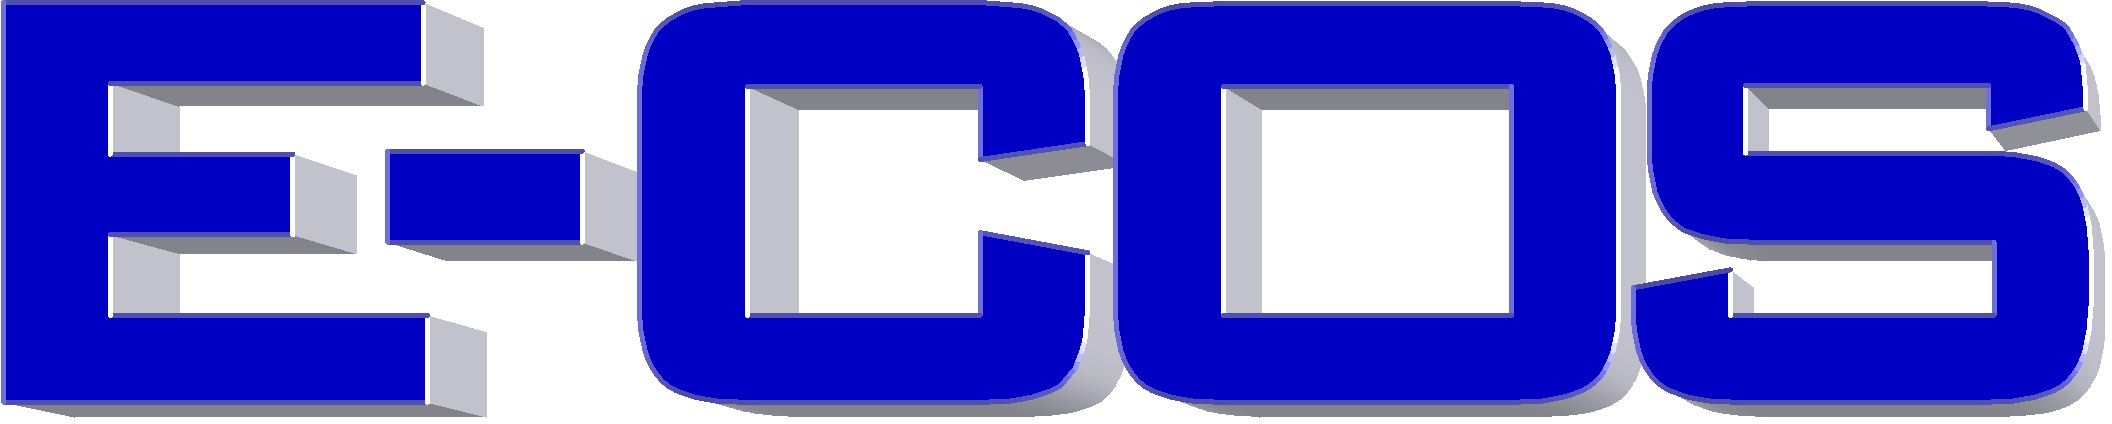 บริษัท อี คอส จำกัด logo โลโก้